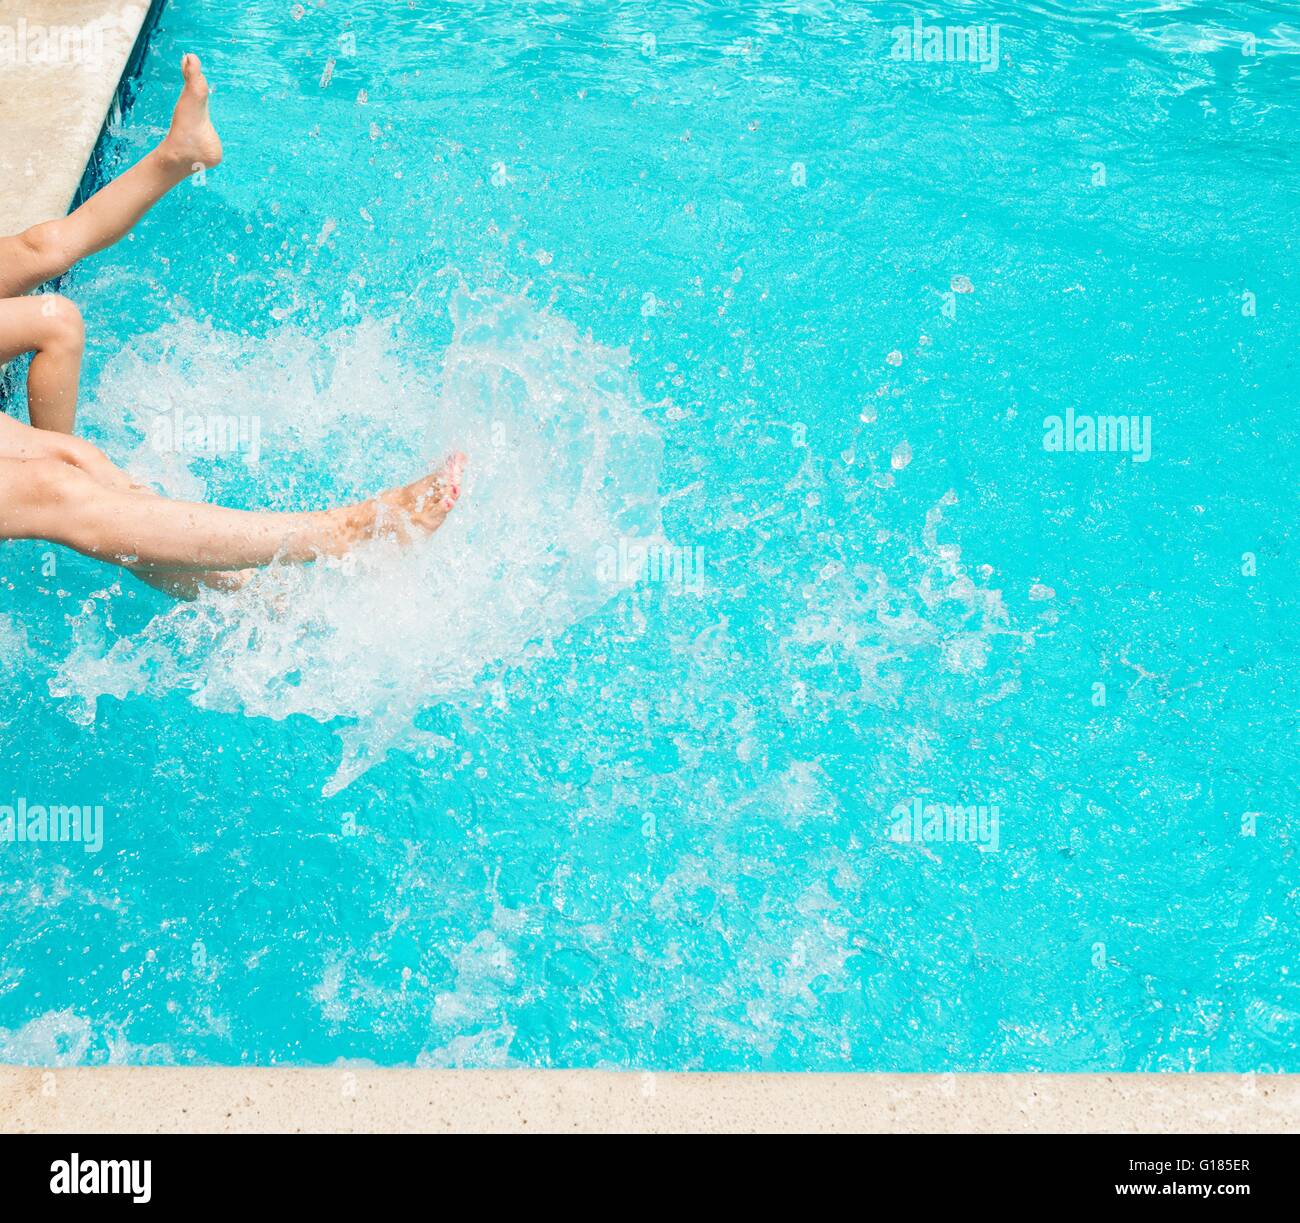 Legs splashing water in swimming pool Stock Photo